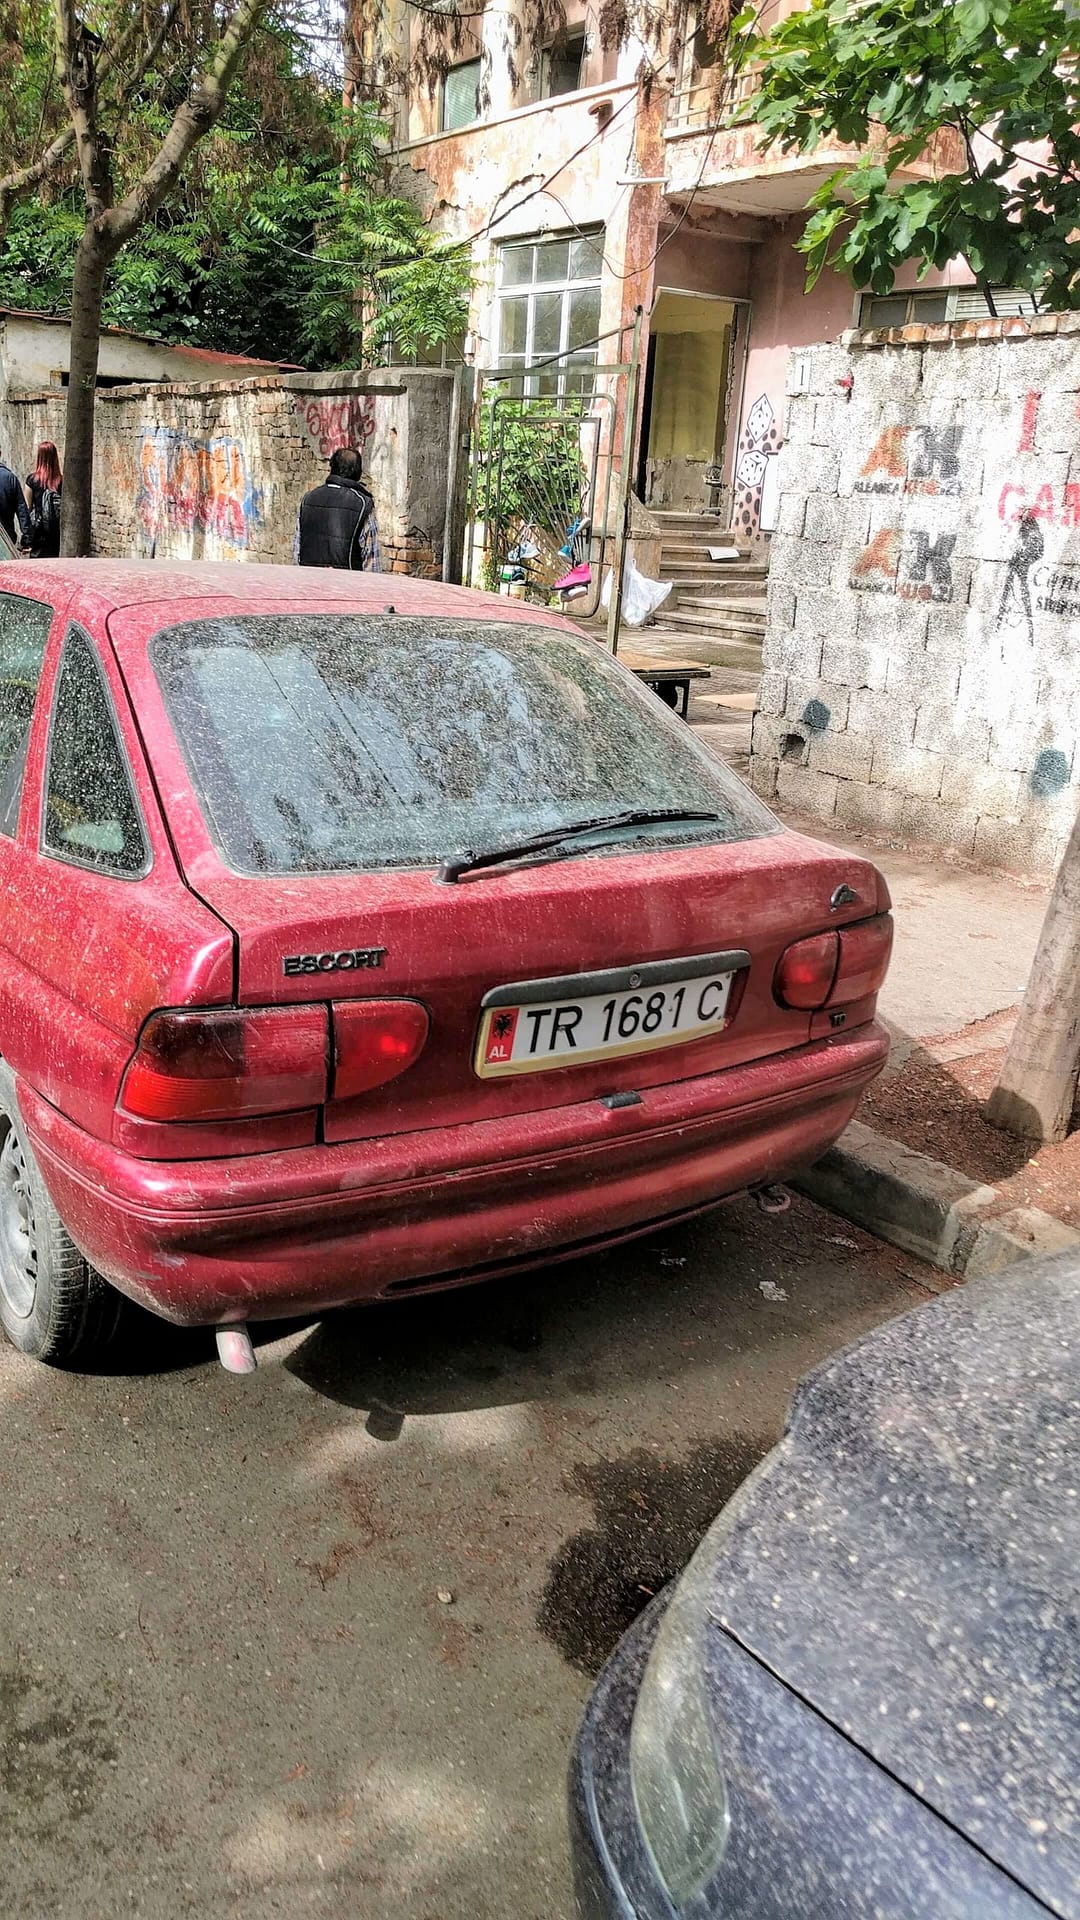 Dirty car in Tirana